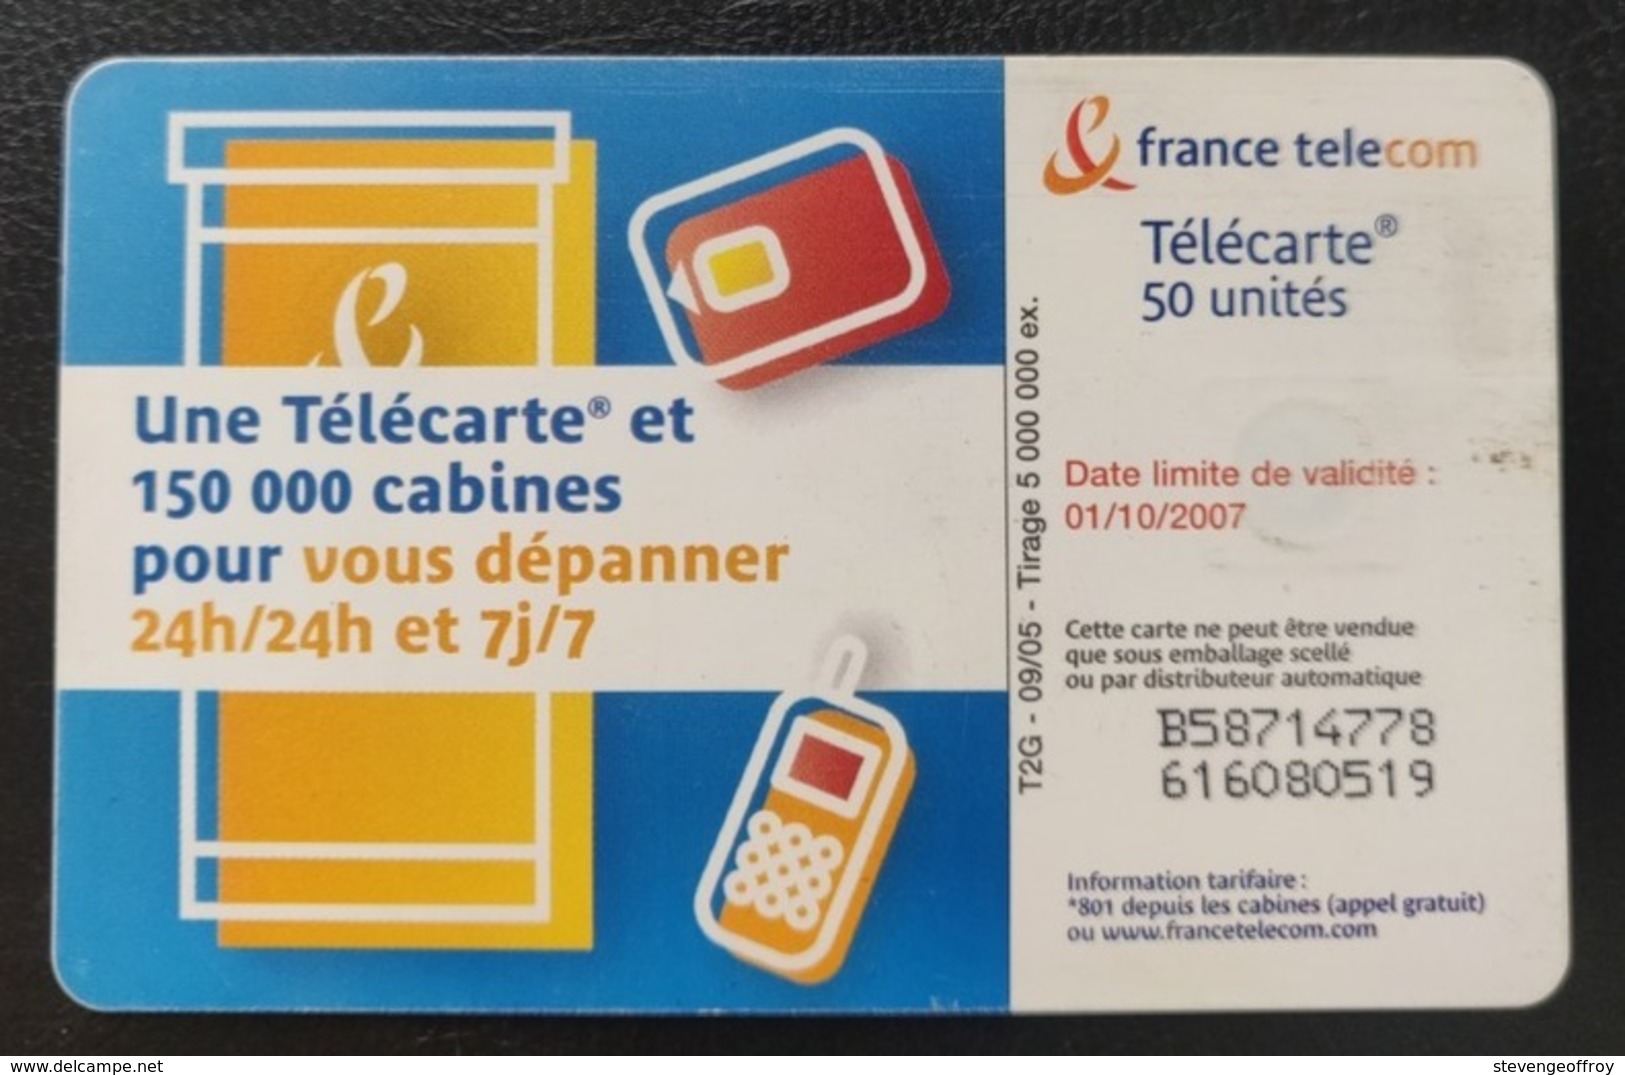 Telecarte France Publique 2005 Mode D Emploi Couple 1 Amour Cabine - 2005